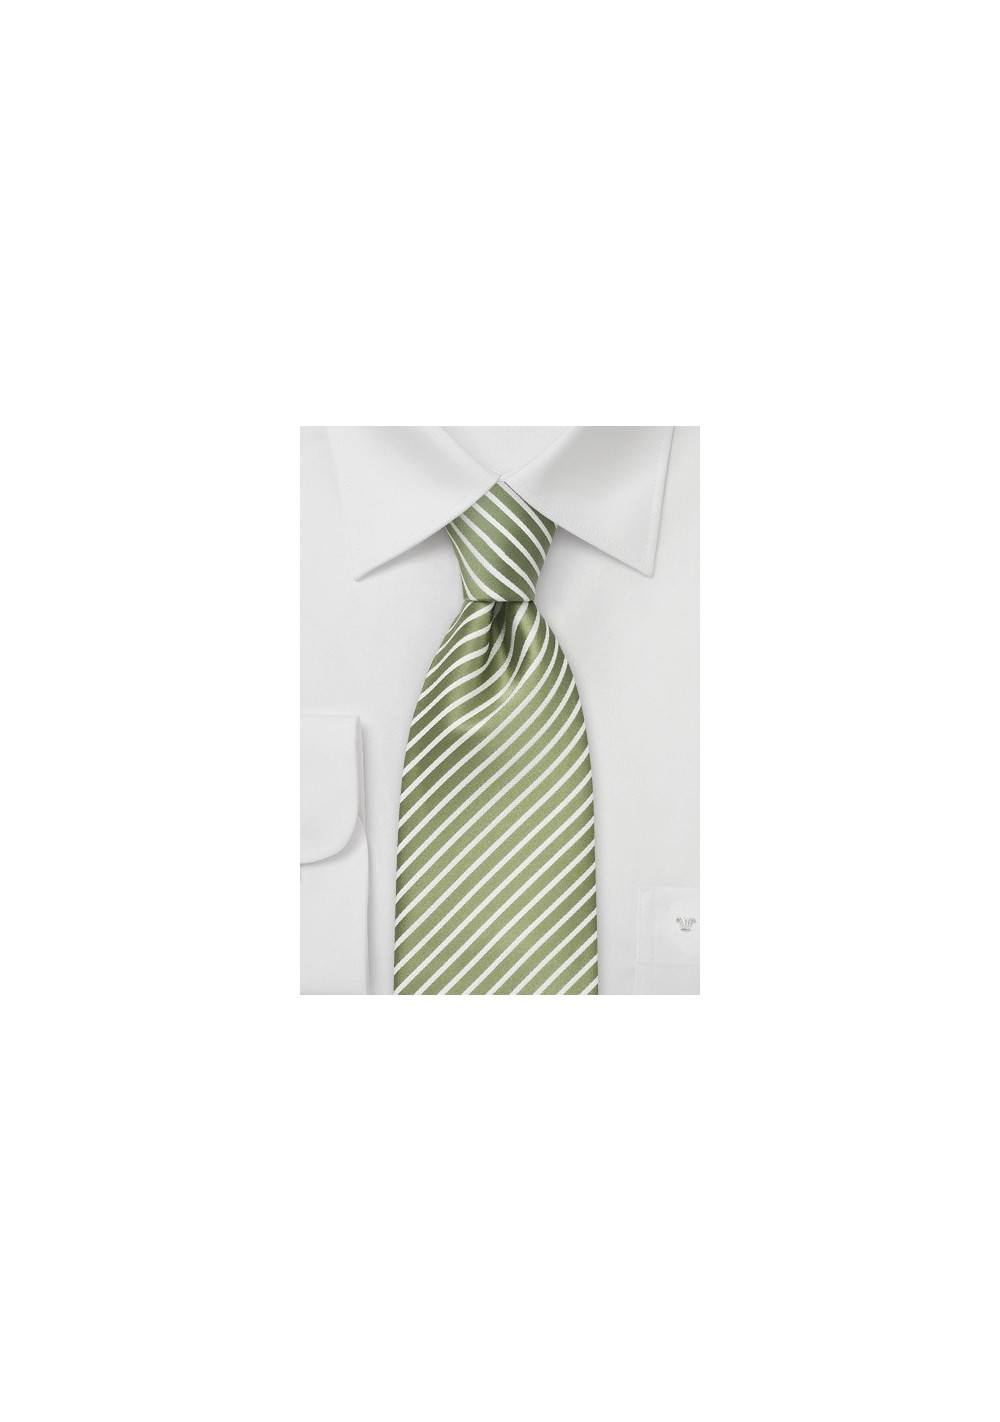 Extra Long Spring Green Necktie